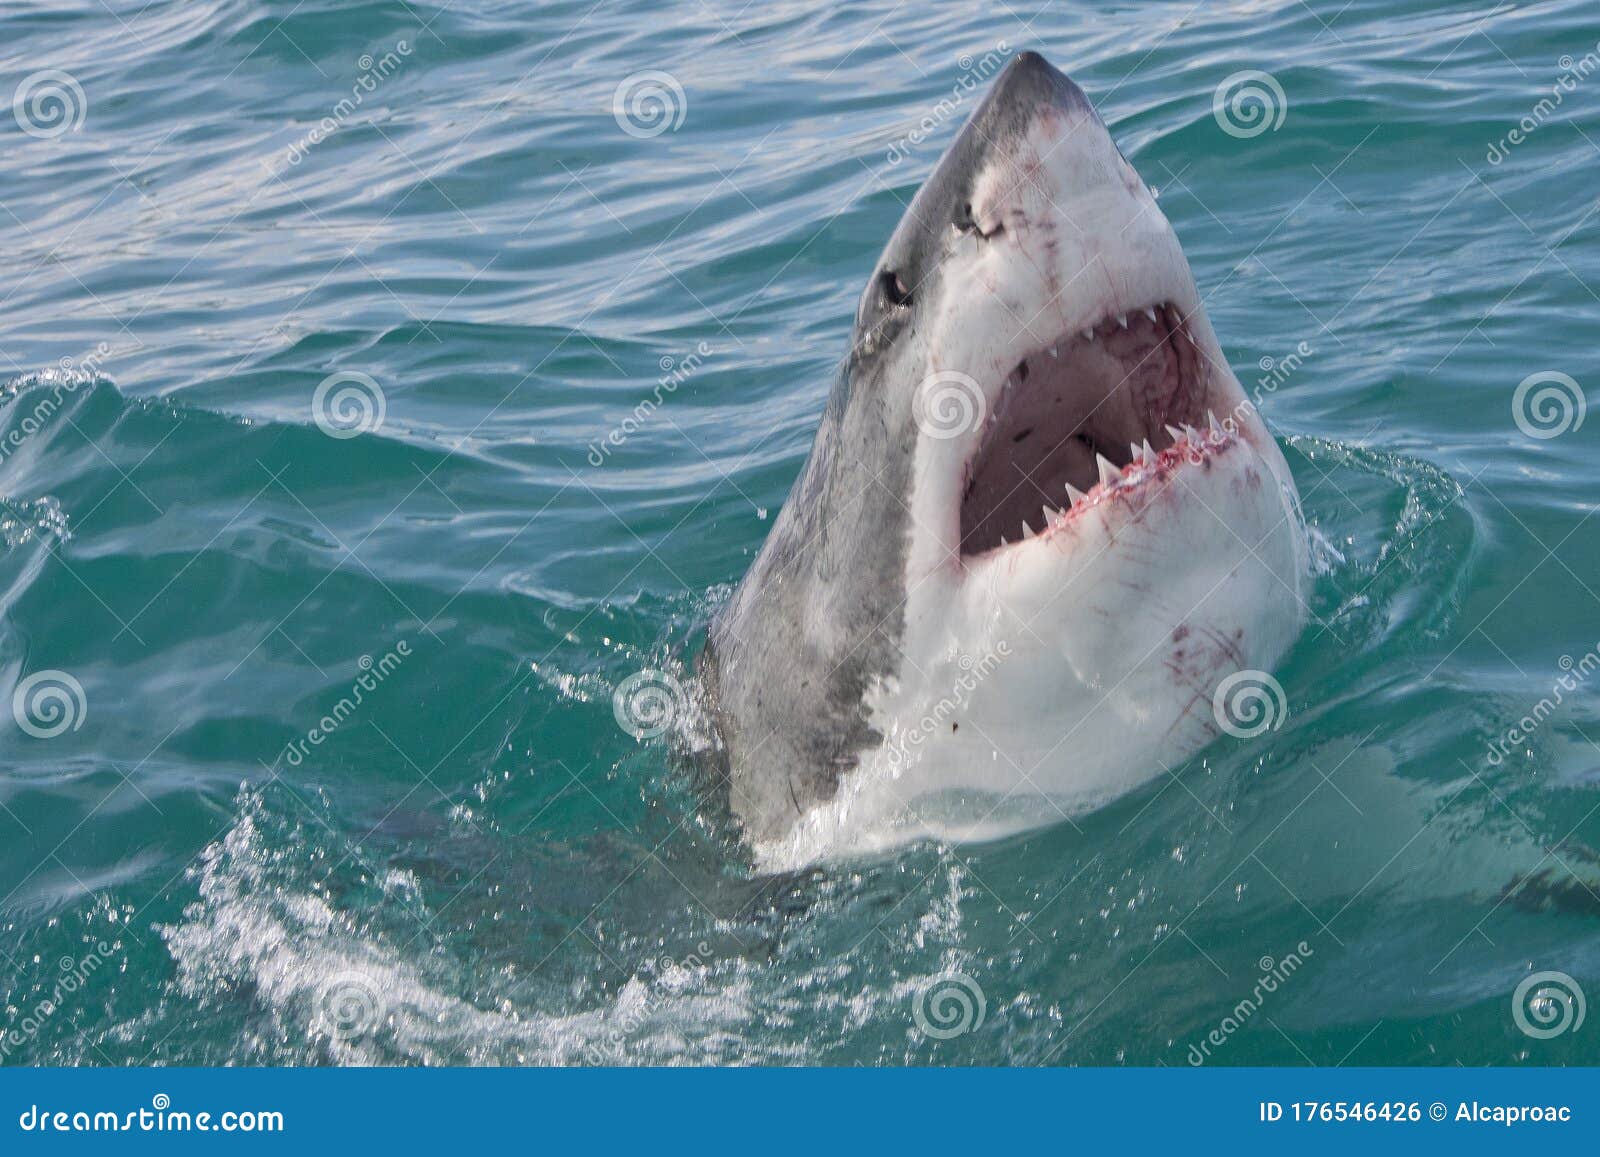 用户照片-Carcharhinus longimanus-长鳍真鲨-喵潜AI鱼类辨识 FISH ID - 你的在线鱼书